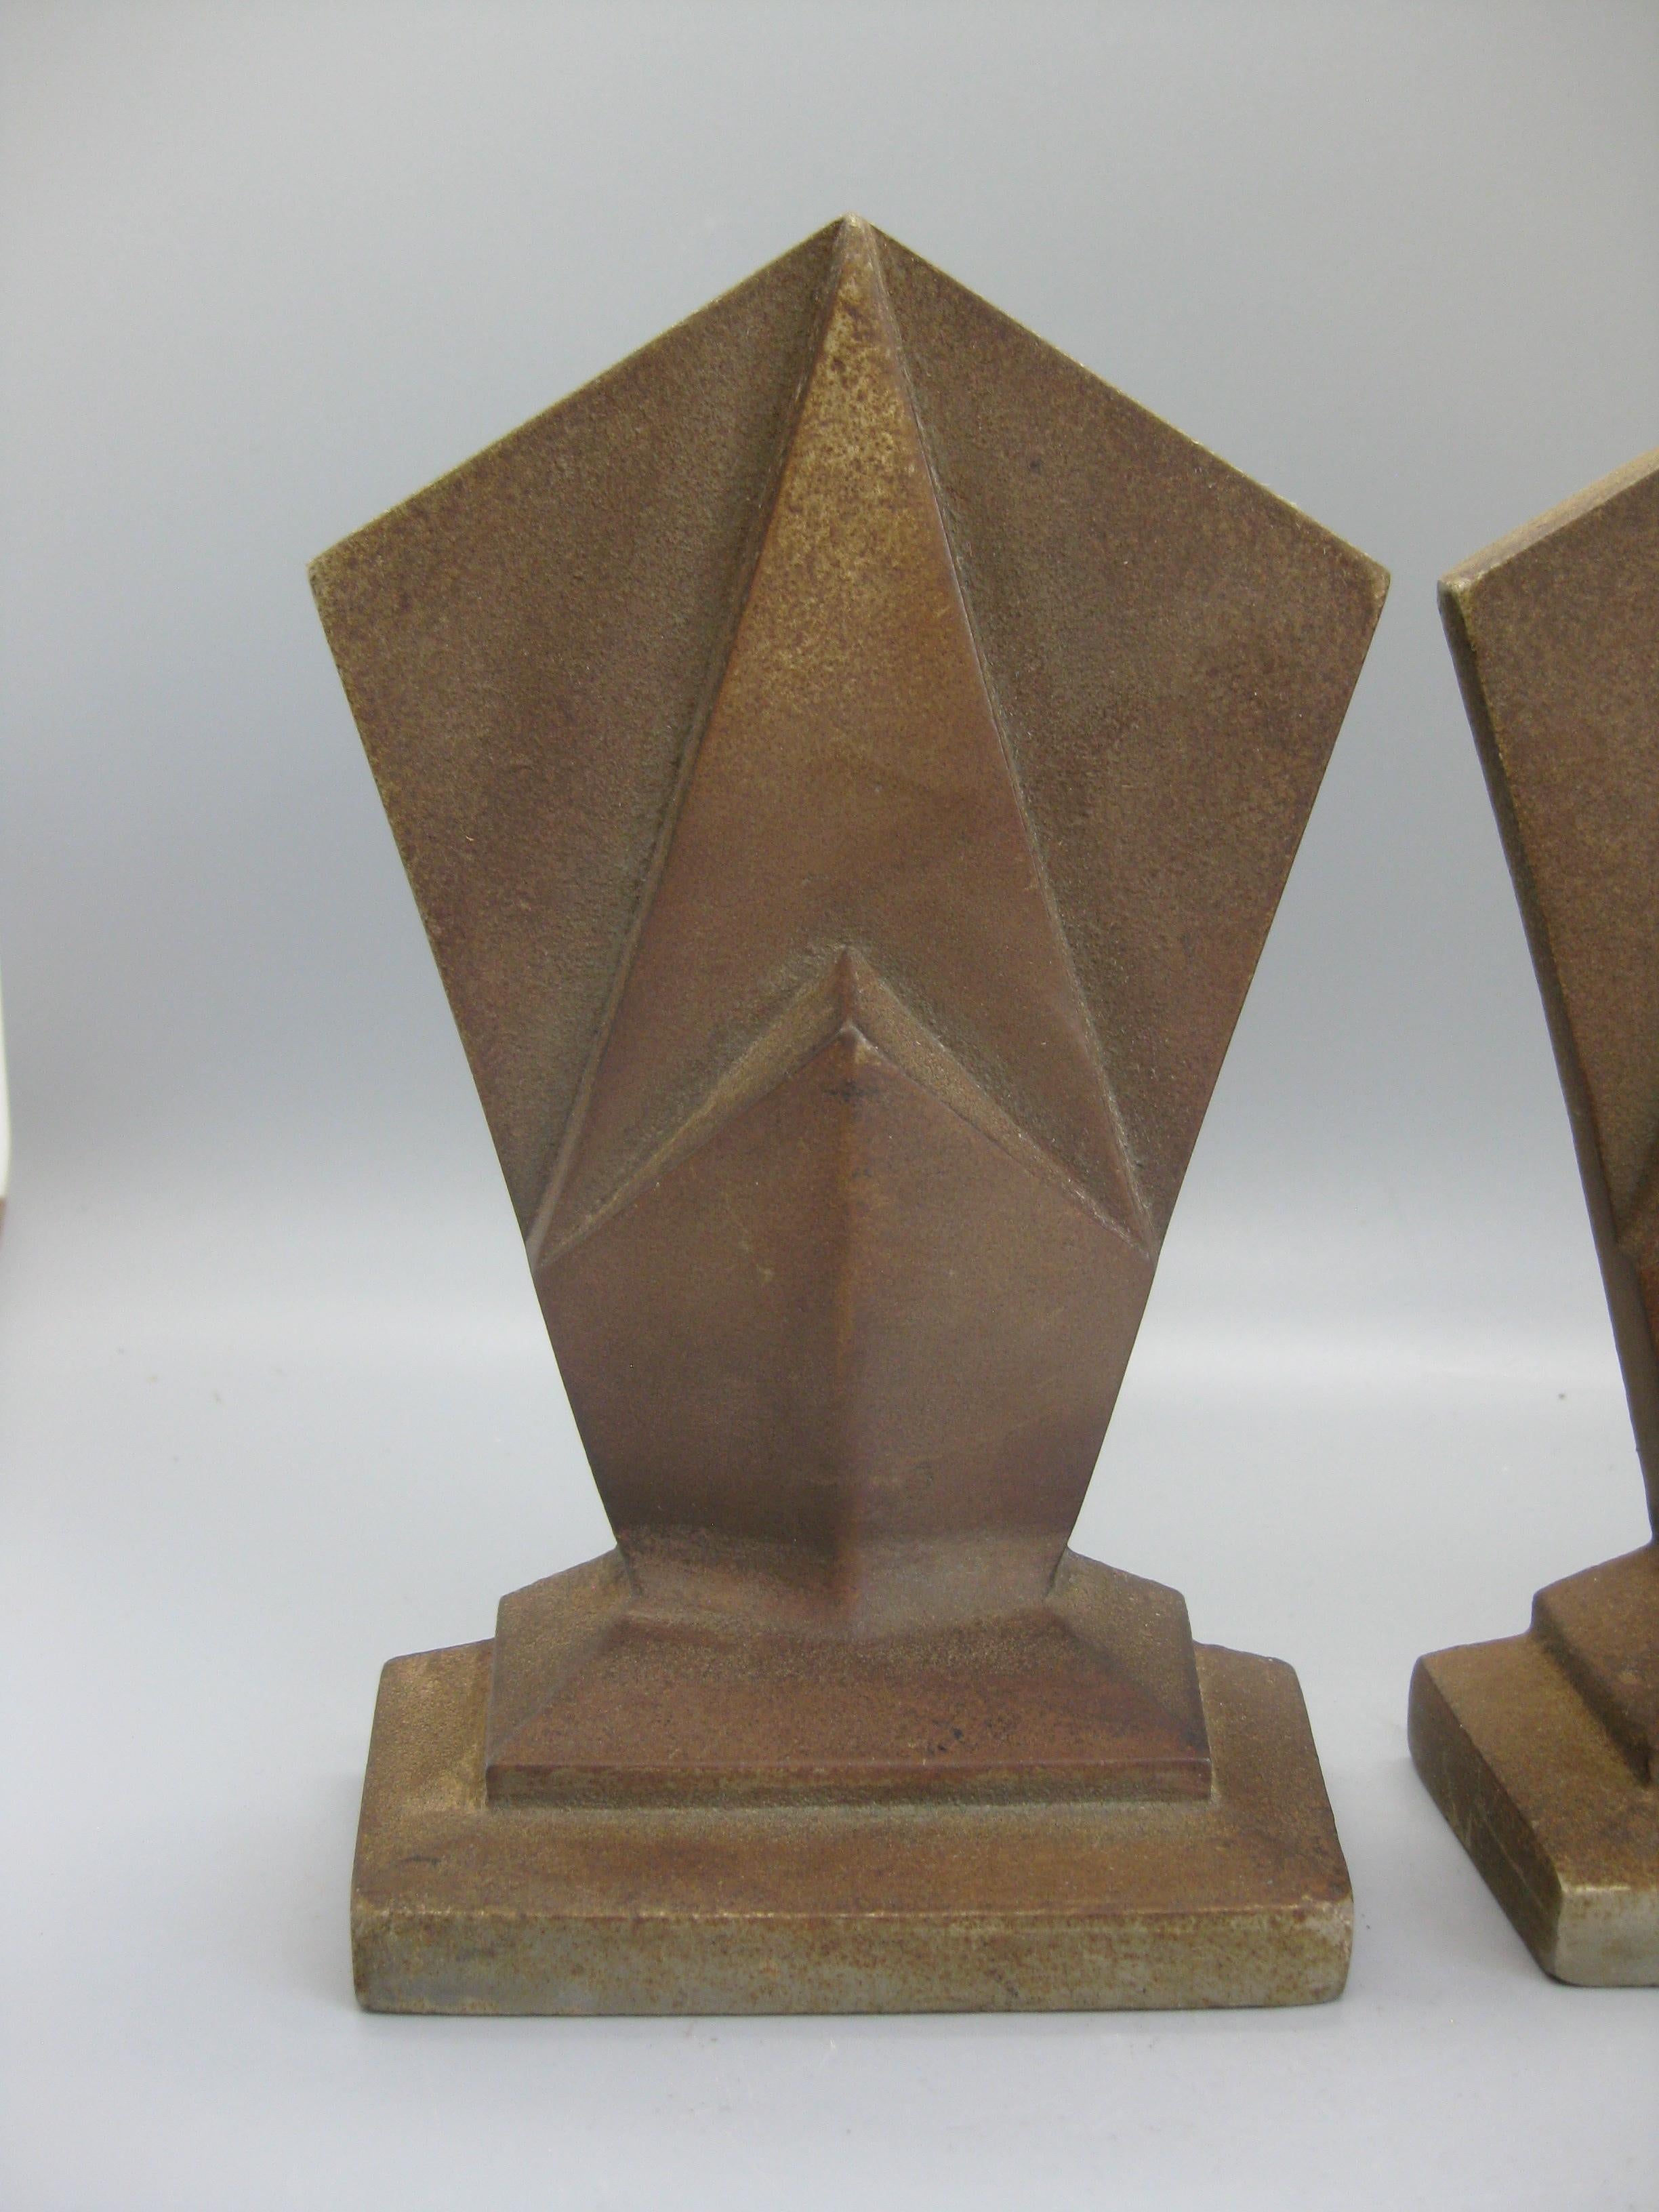 Superbe paire de serre-livres Art Déco Hubley modèle #307 en fonte d'acier à motifs géométriques de gratte-ciel, datant des années 1920-début 1930. Ils sont en fonte et ont une belle patine ancienne. Superbes détails et conception. Signé au dos. En